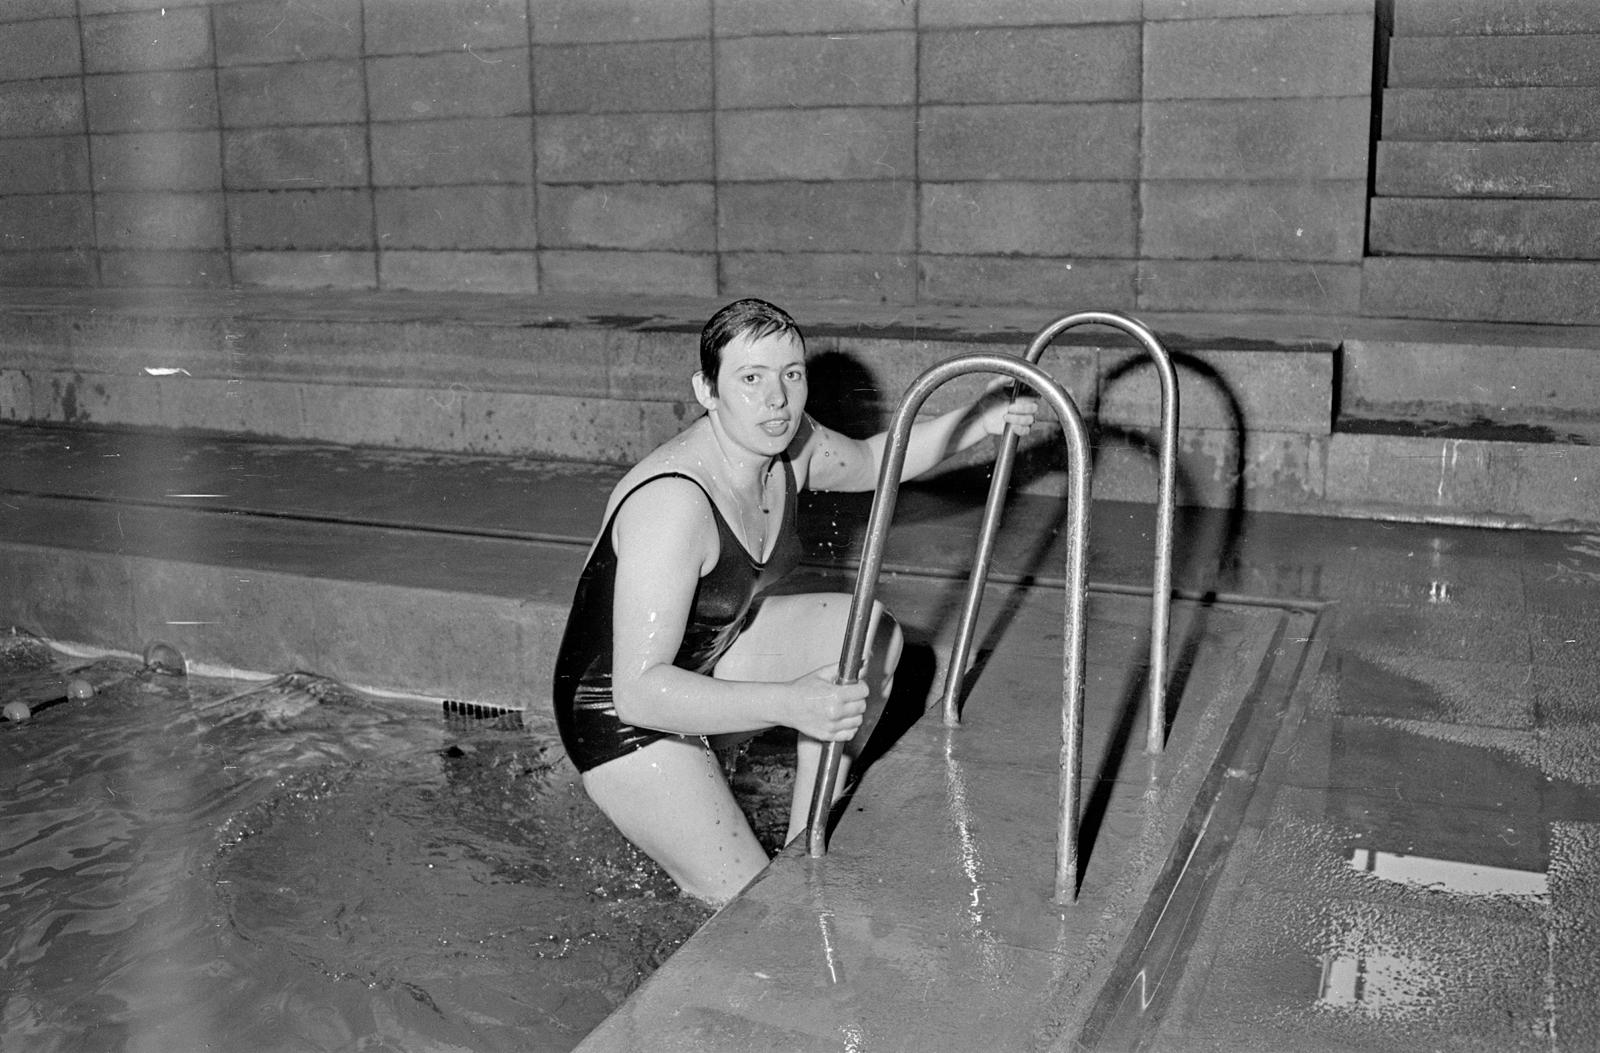 Entrenadors en una piscina coberta